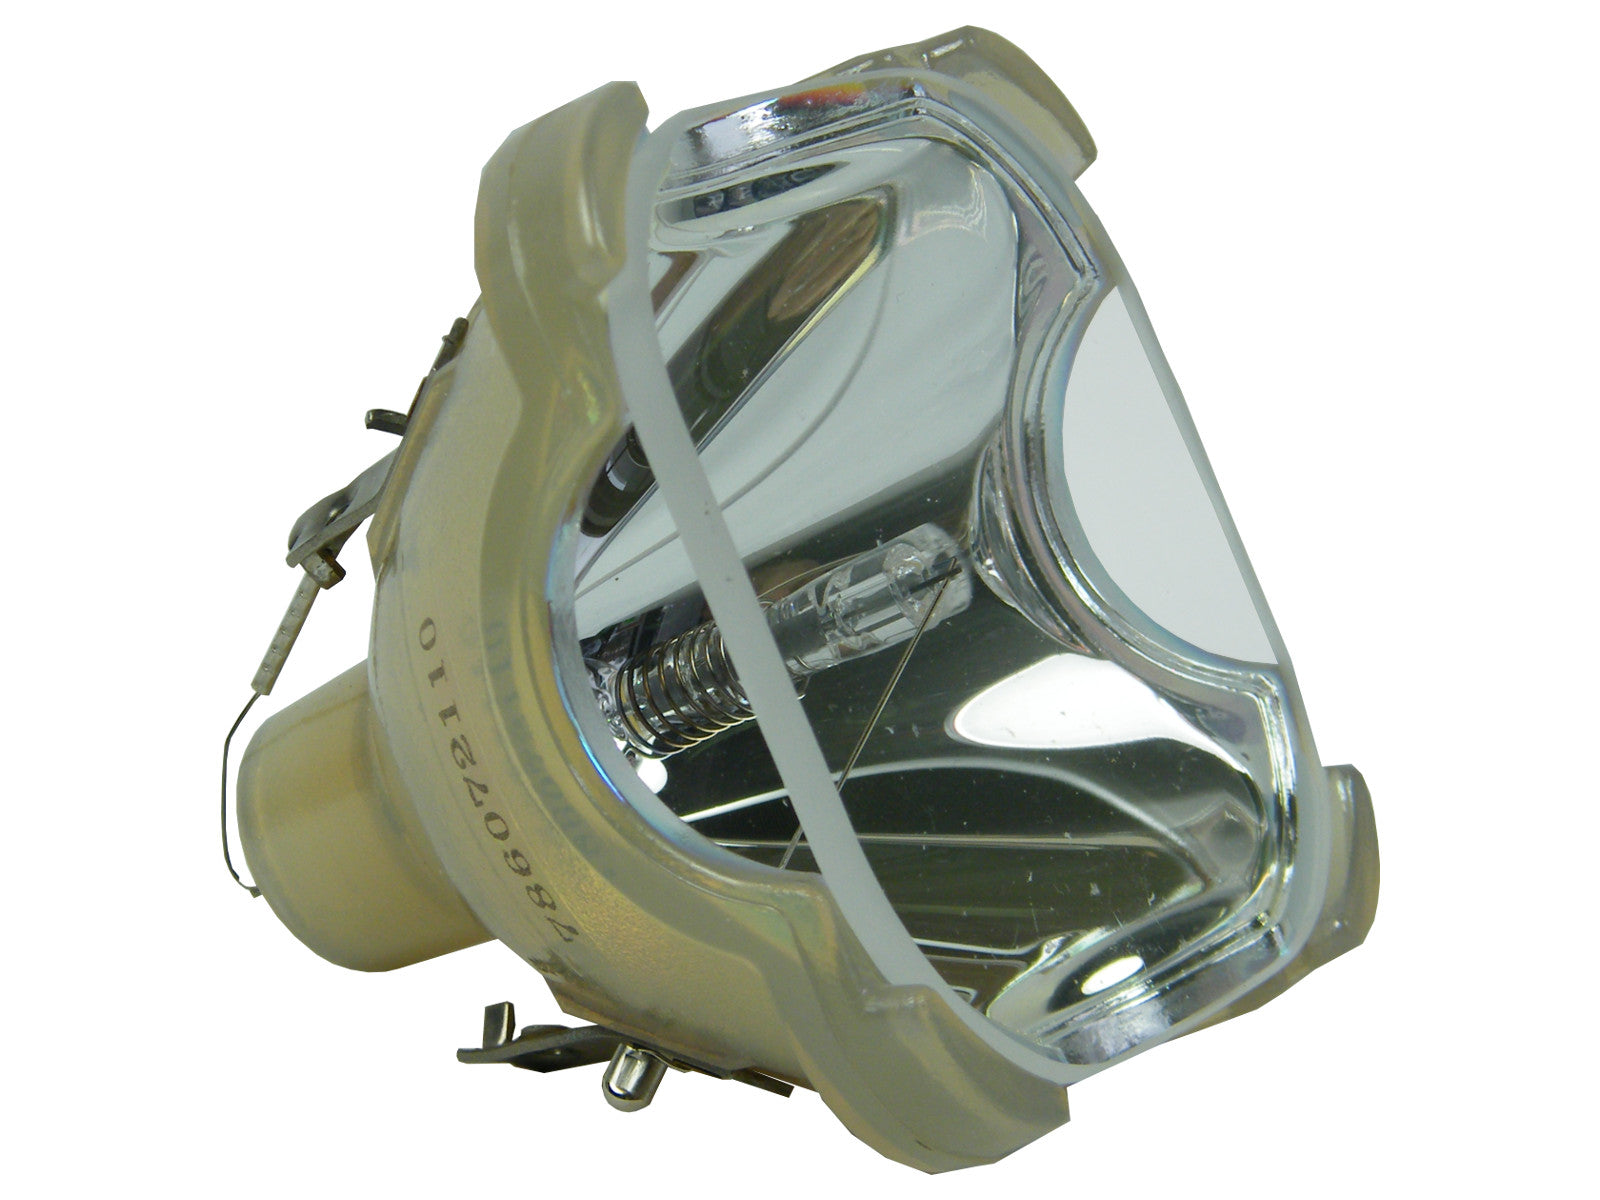 PHILIPS Beamerlampe UHP 215-150W 0.8 P22 für diverse Projektoren - Bild 1